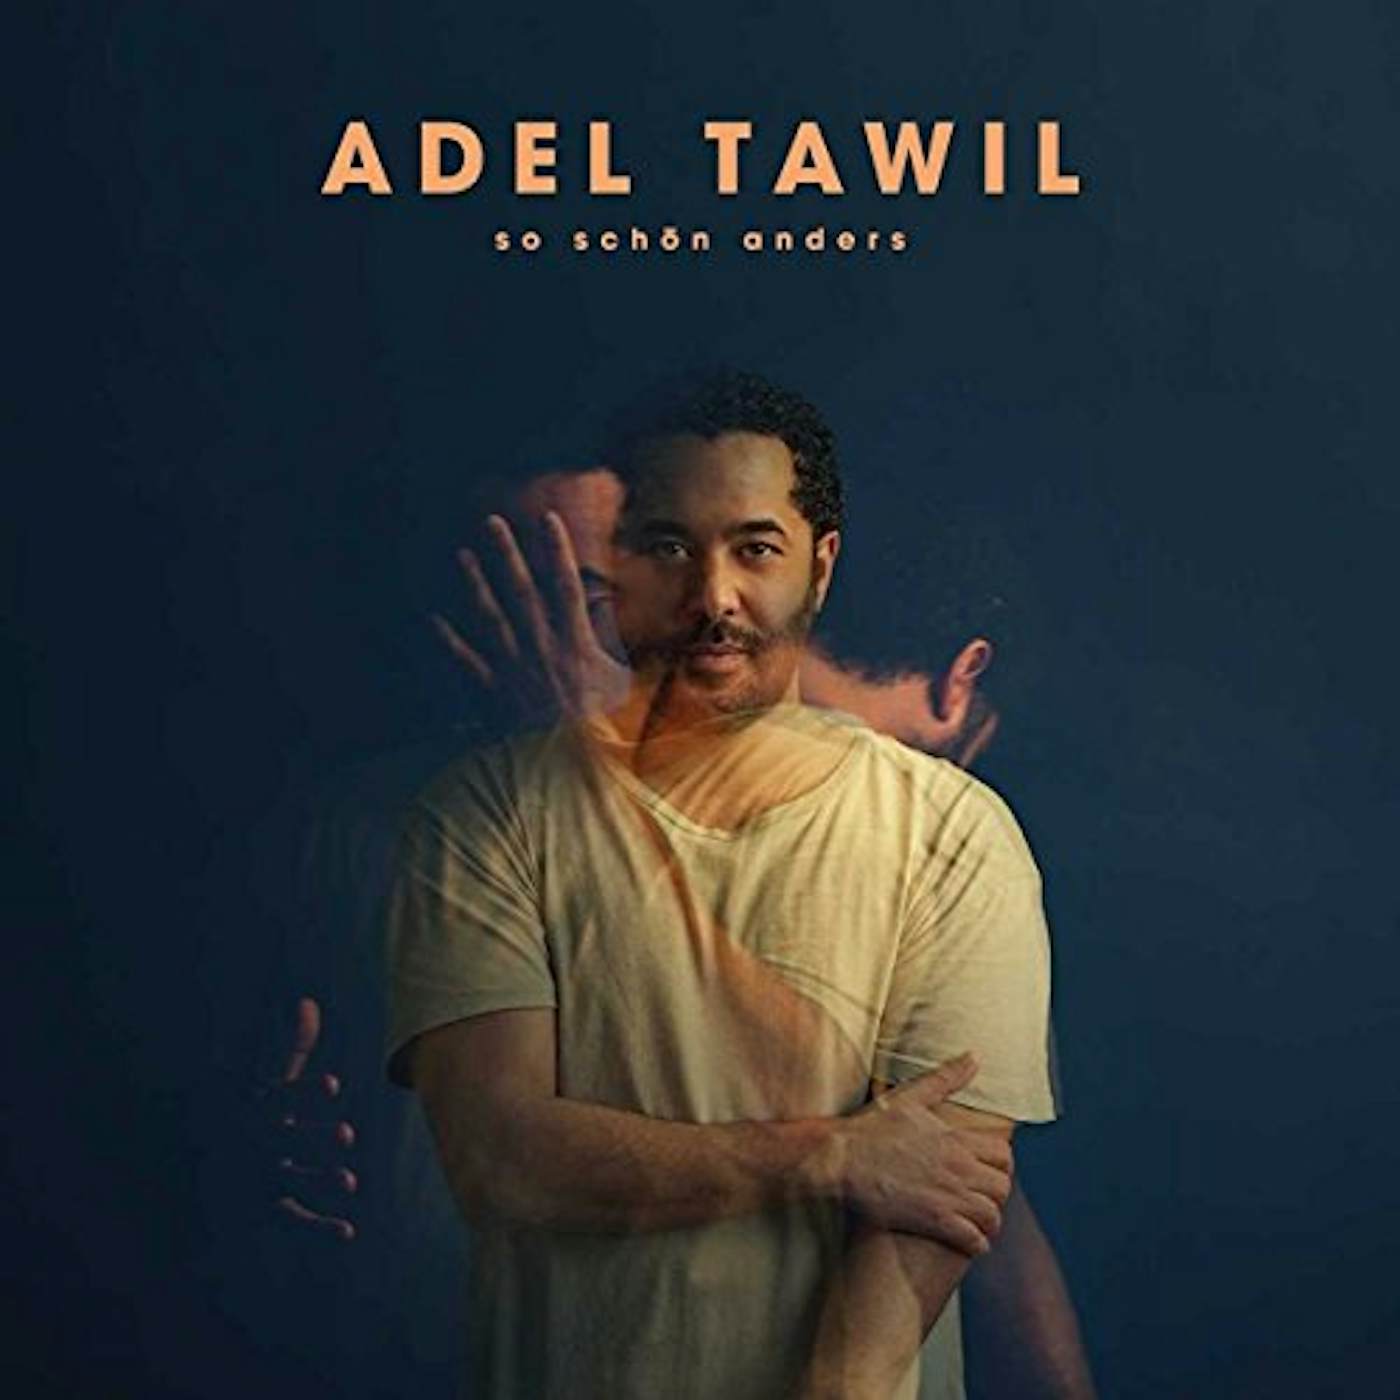 Adel Tawil SO SCHOEN ANDERS: DELUXE EDITION CD